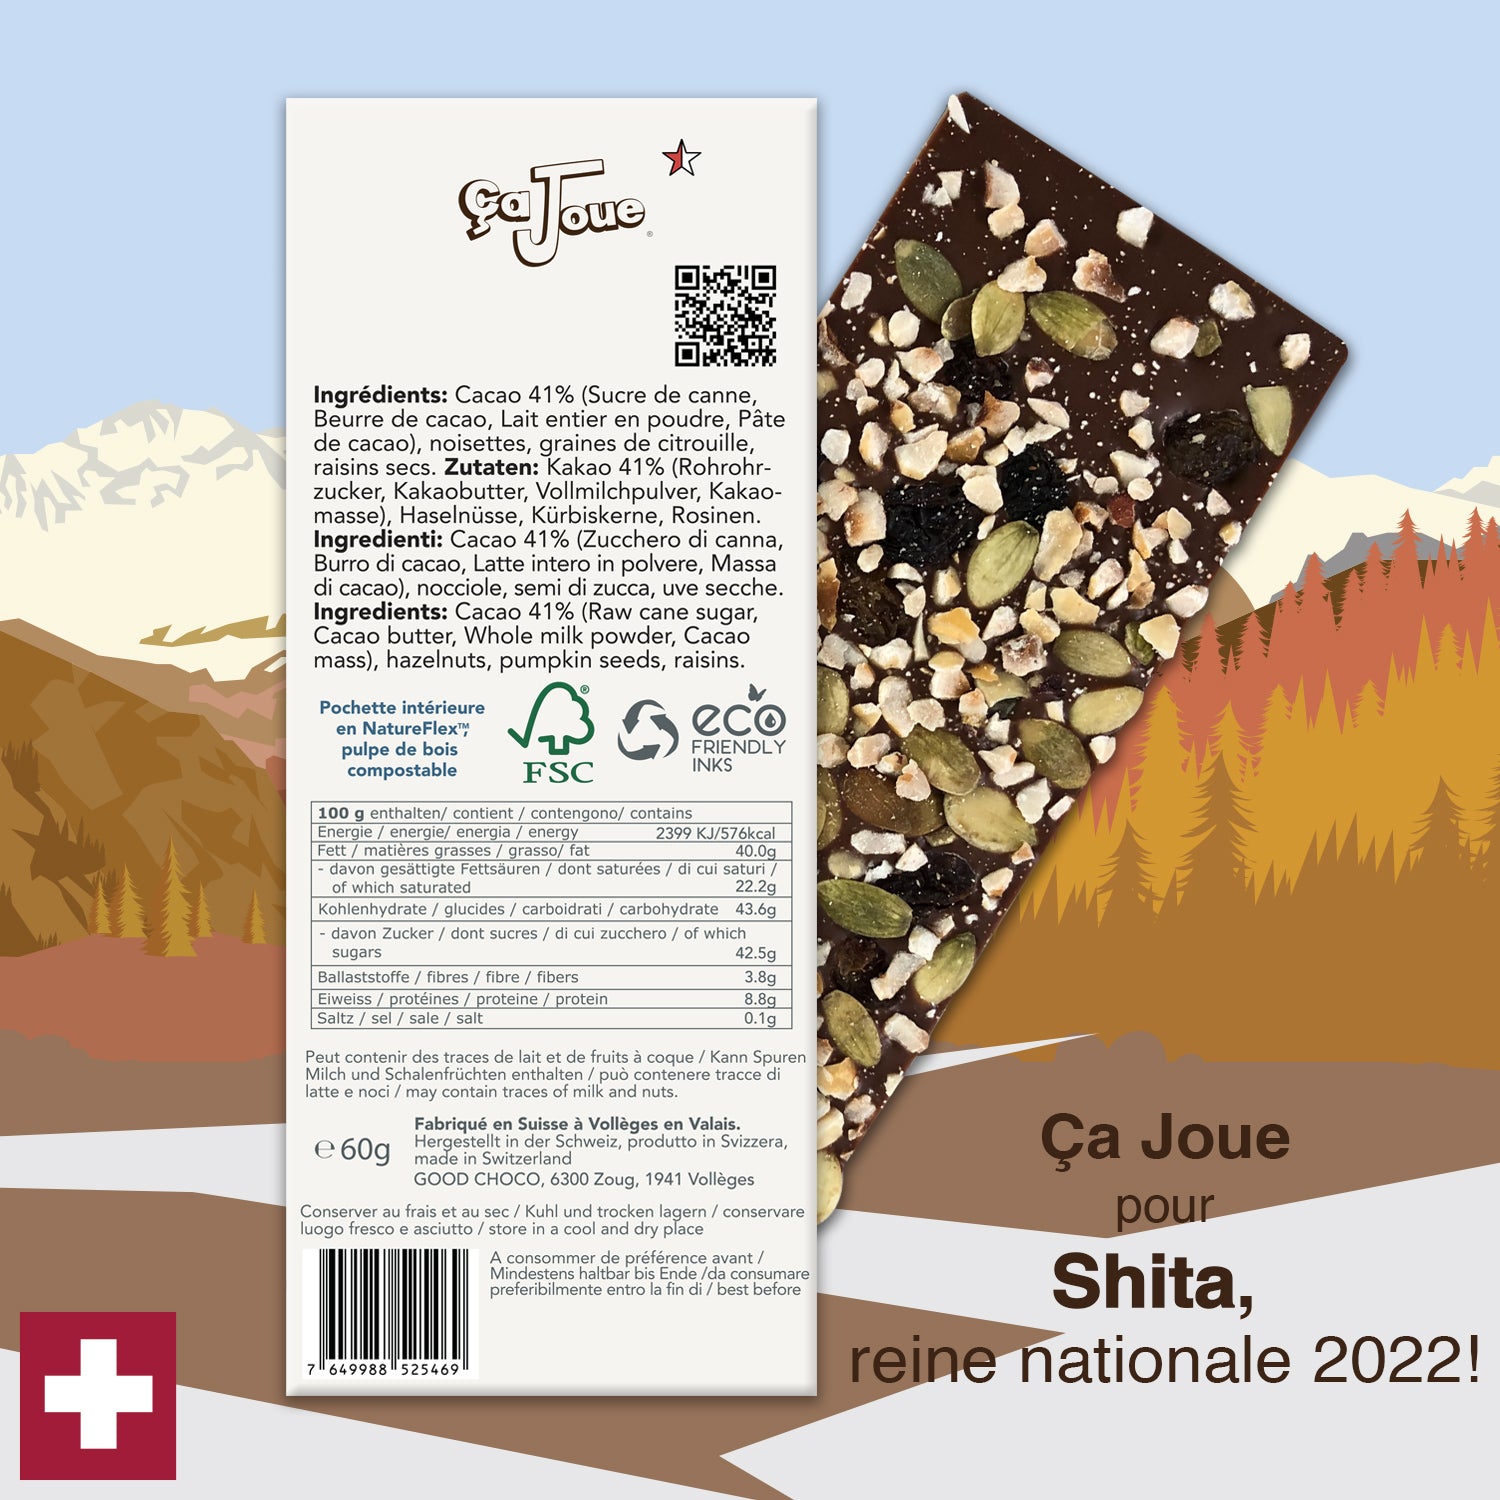 Ça Joue für die Königin Shita (Ref-BL10) Milchschokolade aus Val de Bagnes